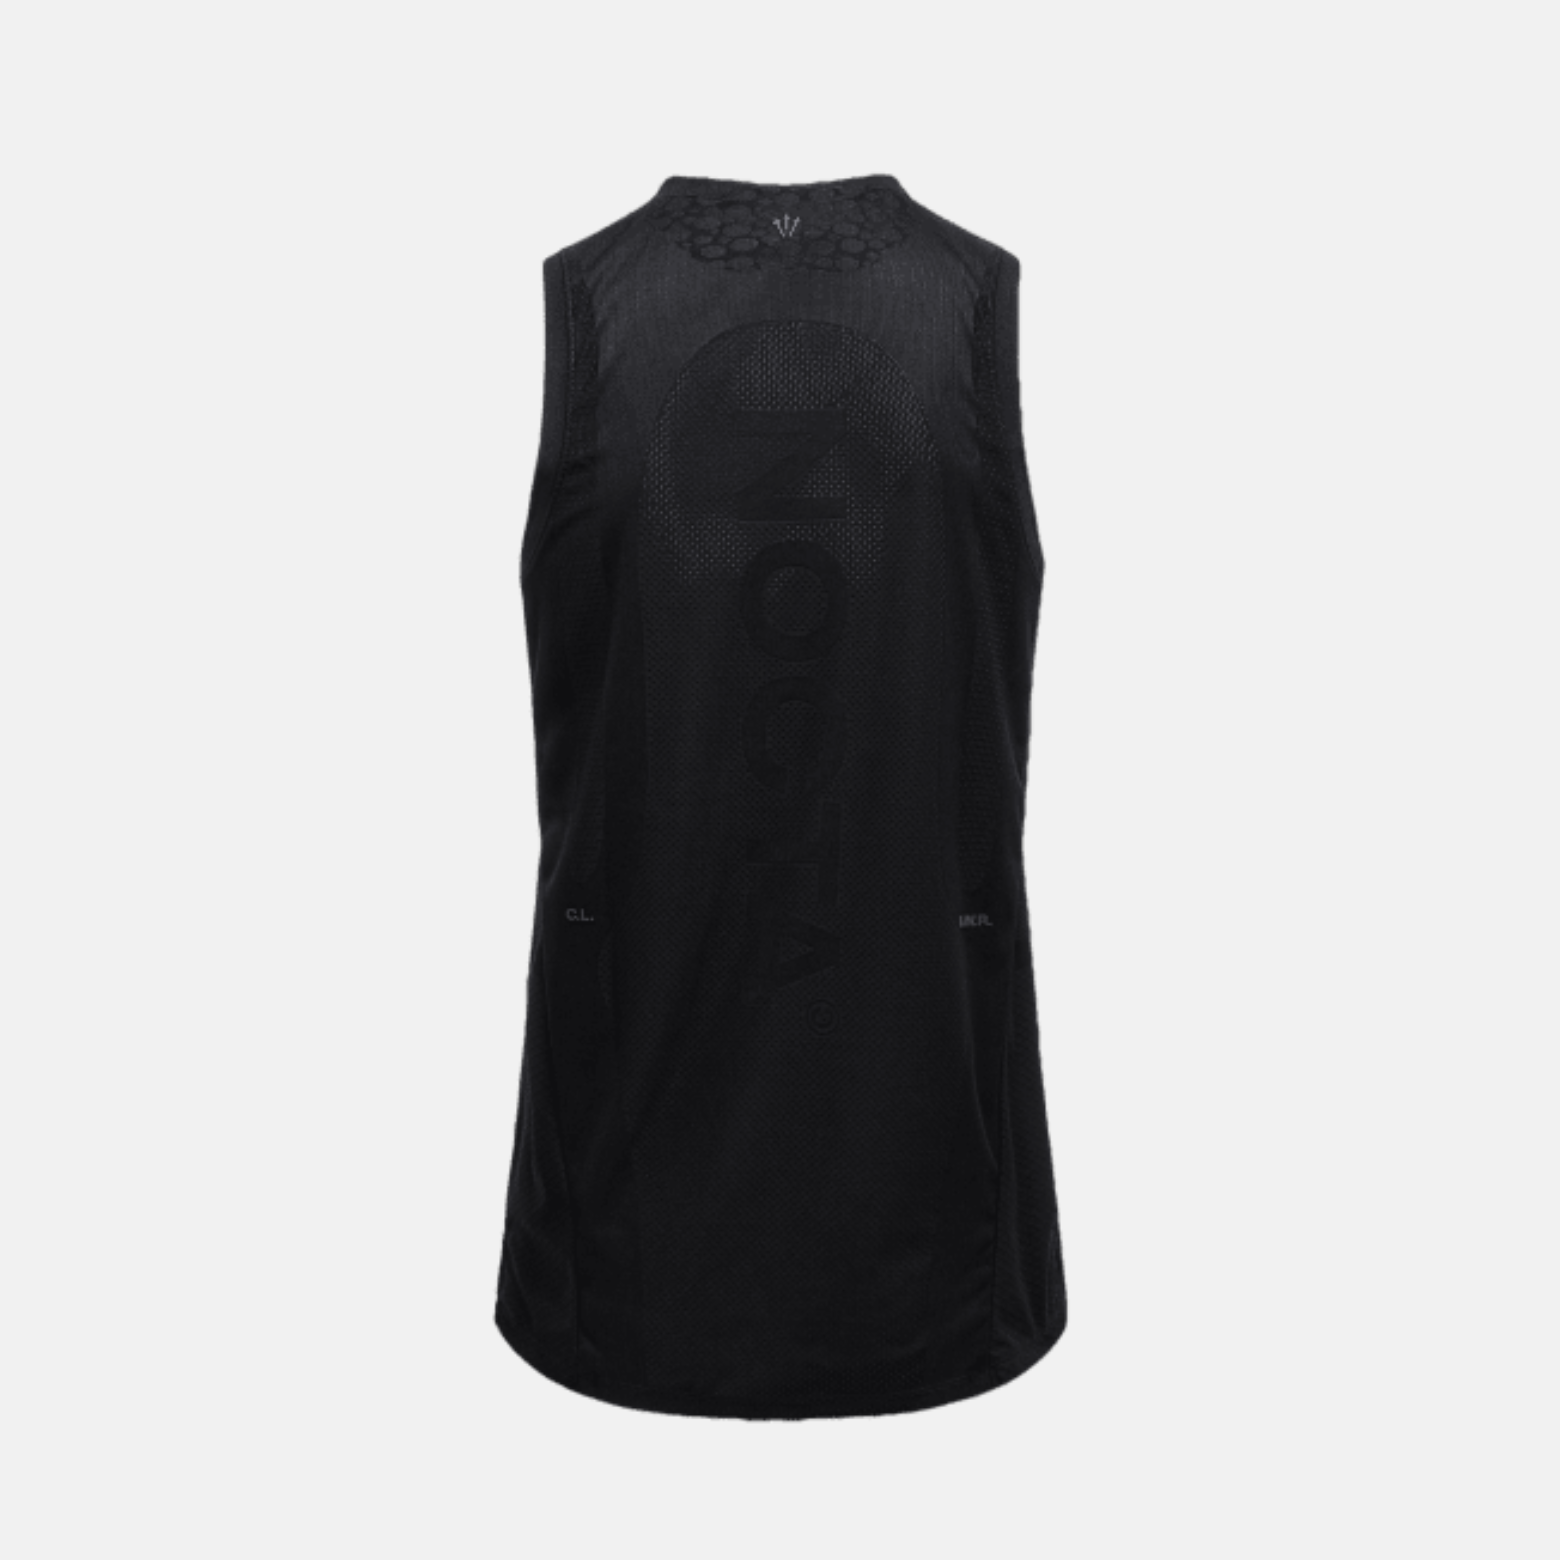 T-shirt de basket-ball Nike x NOCTA Noir